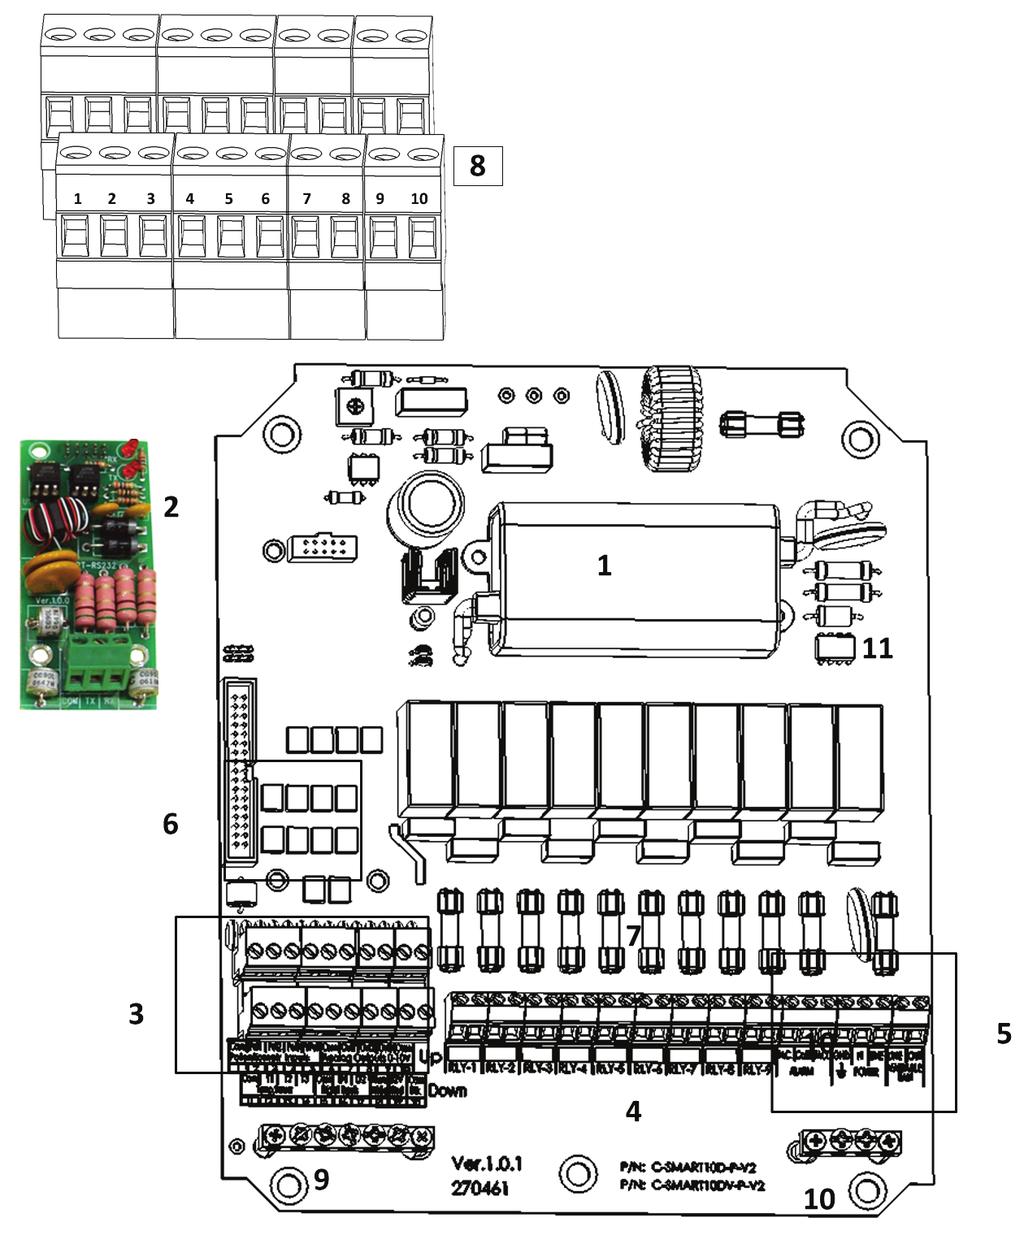 4.3 Farm Hand CCU 10R Wiring Figure 8: Farm Hand CCU 10R Board Layout Key 1: Transformer 3: Low voltage ports 5: Power ports 7: Fuses 9: Ground strip 2: